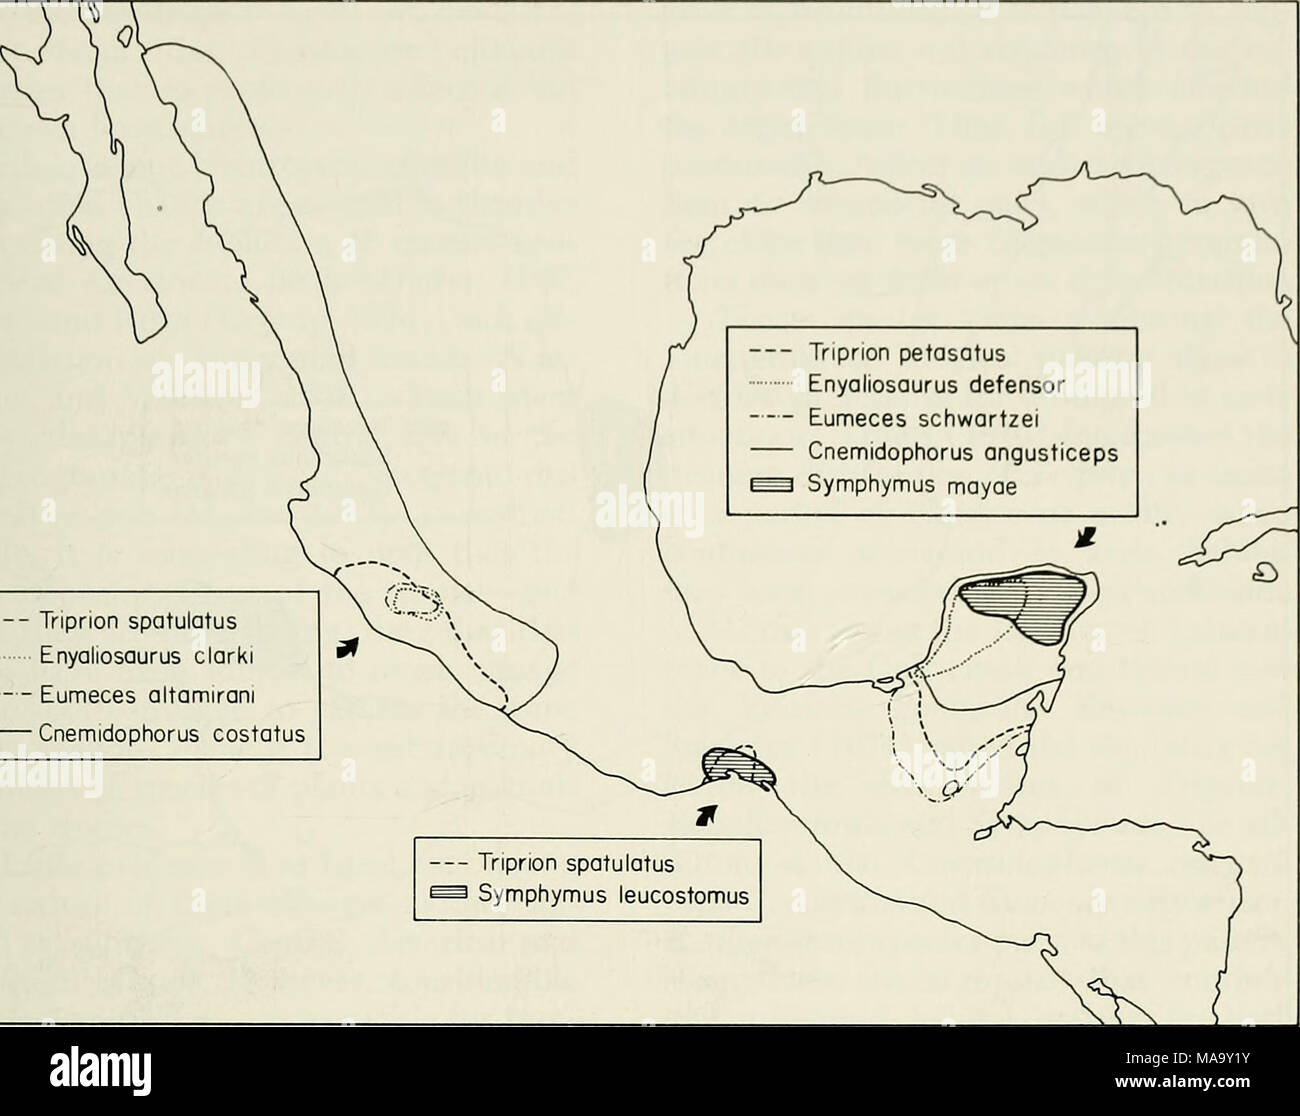 . Un ecogeographic l'analyse de l'herpétofaune de la péninsule du Yucatan . Triprion spatulatus Enyaliosaurus clarki Eumeces altamirani Cnemidophorus costatus Fig. 21.-l'Yucatan-West profil de distribution au Mexique. Des distributions de la péninsule sont approximatives. limites de cette espèce mésophile. Ainsi, deux espèces adaptées à mésiques sont confinés à l'extrémité nord de la péninsule, mais ont leurs proches dans les secteurs plus humides au sud. Une autre espèces, probablement mésophile, existaient à l'extrémité nord de la péninsule jusqu'à quelque temps dans le Pléistocène. Ce qui précède la distribution Banque D'Images